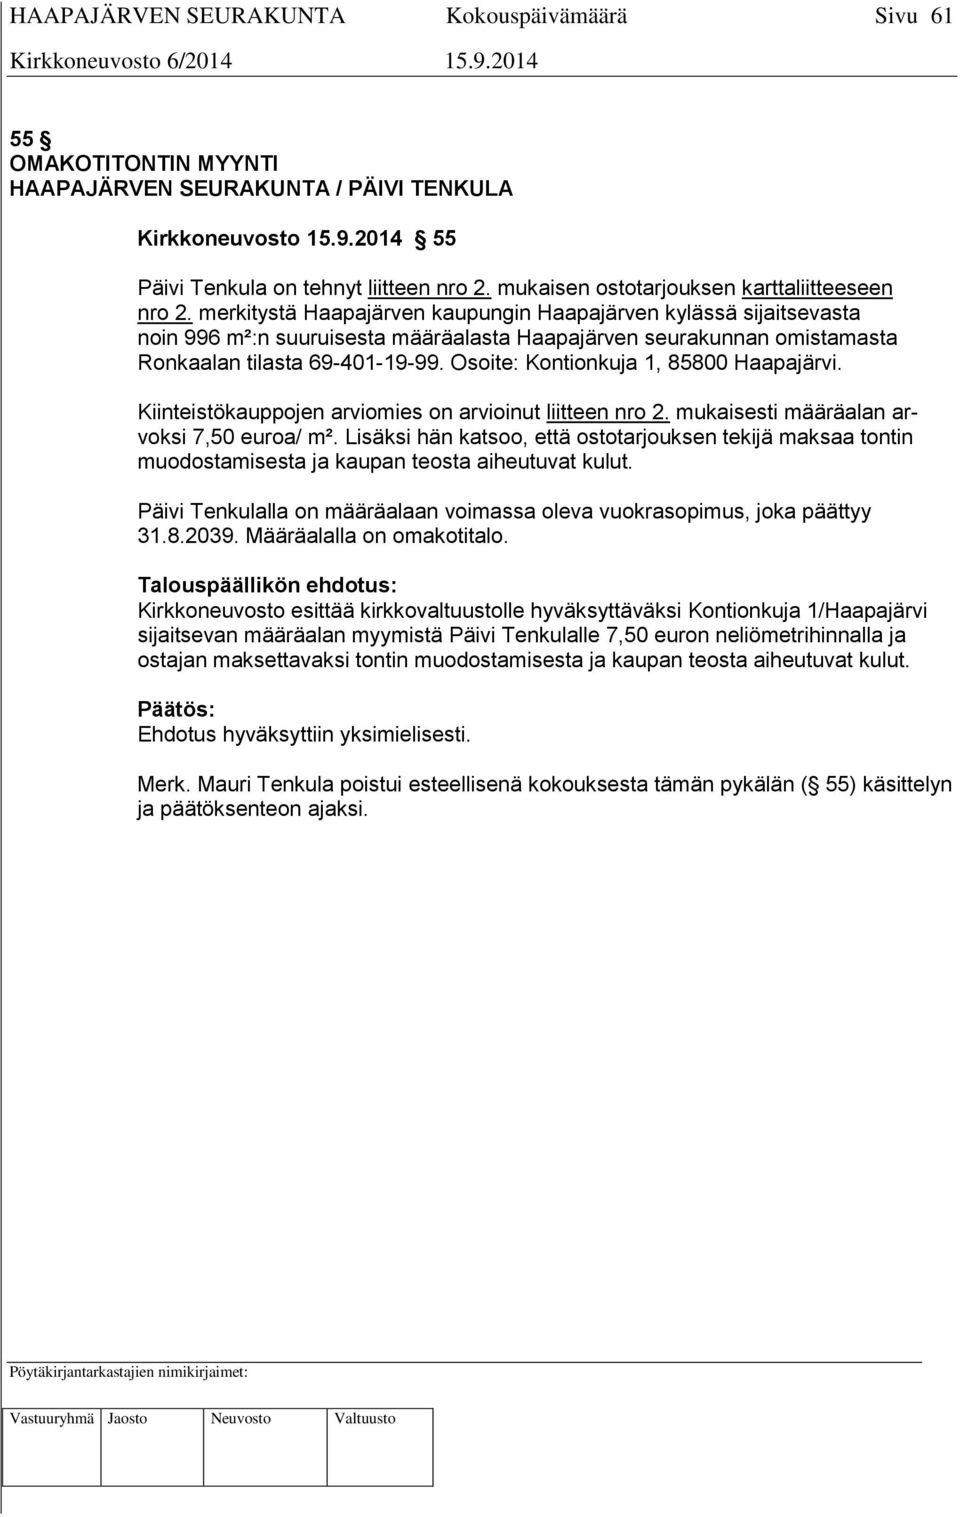 Osoite: Kontionkuja 1, 85800 Haapajärvi. Kiinteistökauppojen arviomies on arvioinut liitteen nro 2. mukaisesti määräalan arvoksi 7,50 euroa/ m².